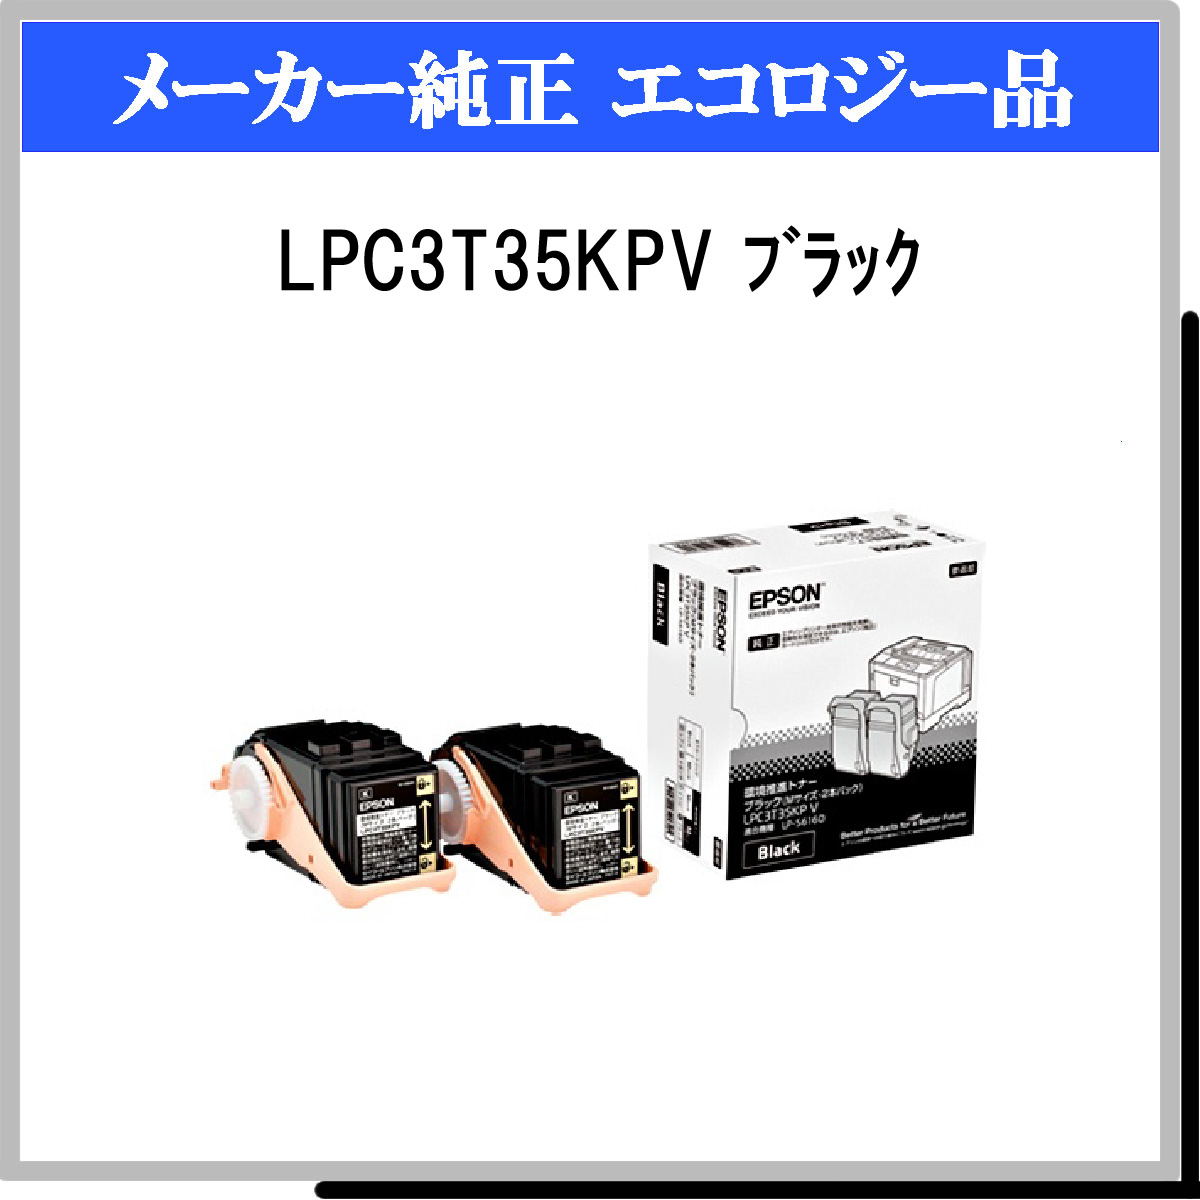 バースデー 記念日 ギフト 贈物 お勧め 通販 EPSON LPC3T35KPV 2本パック